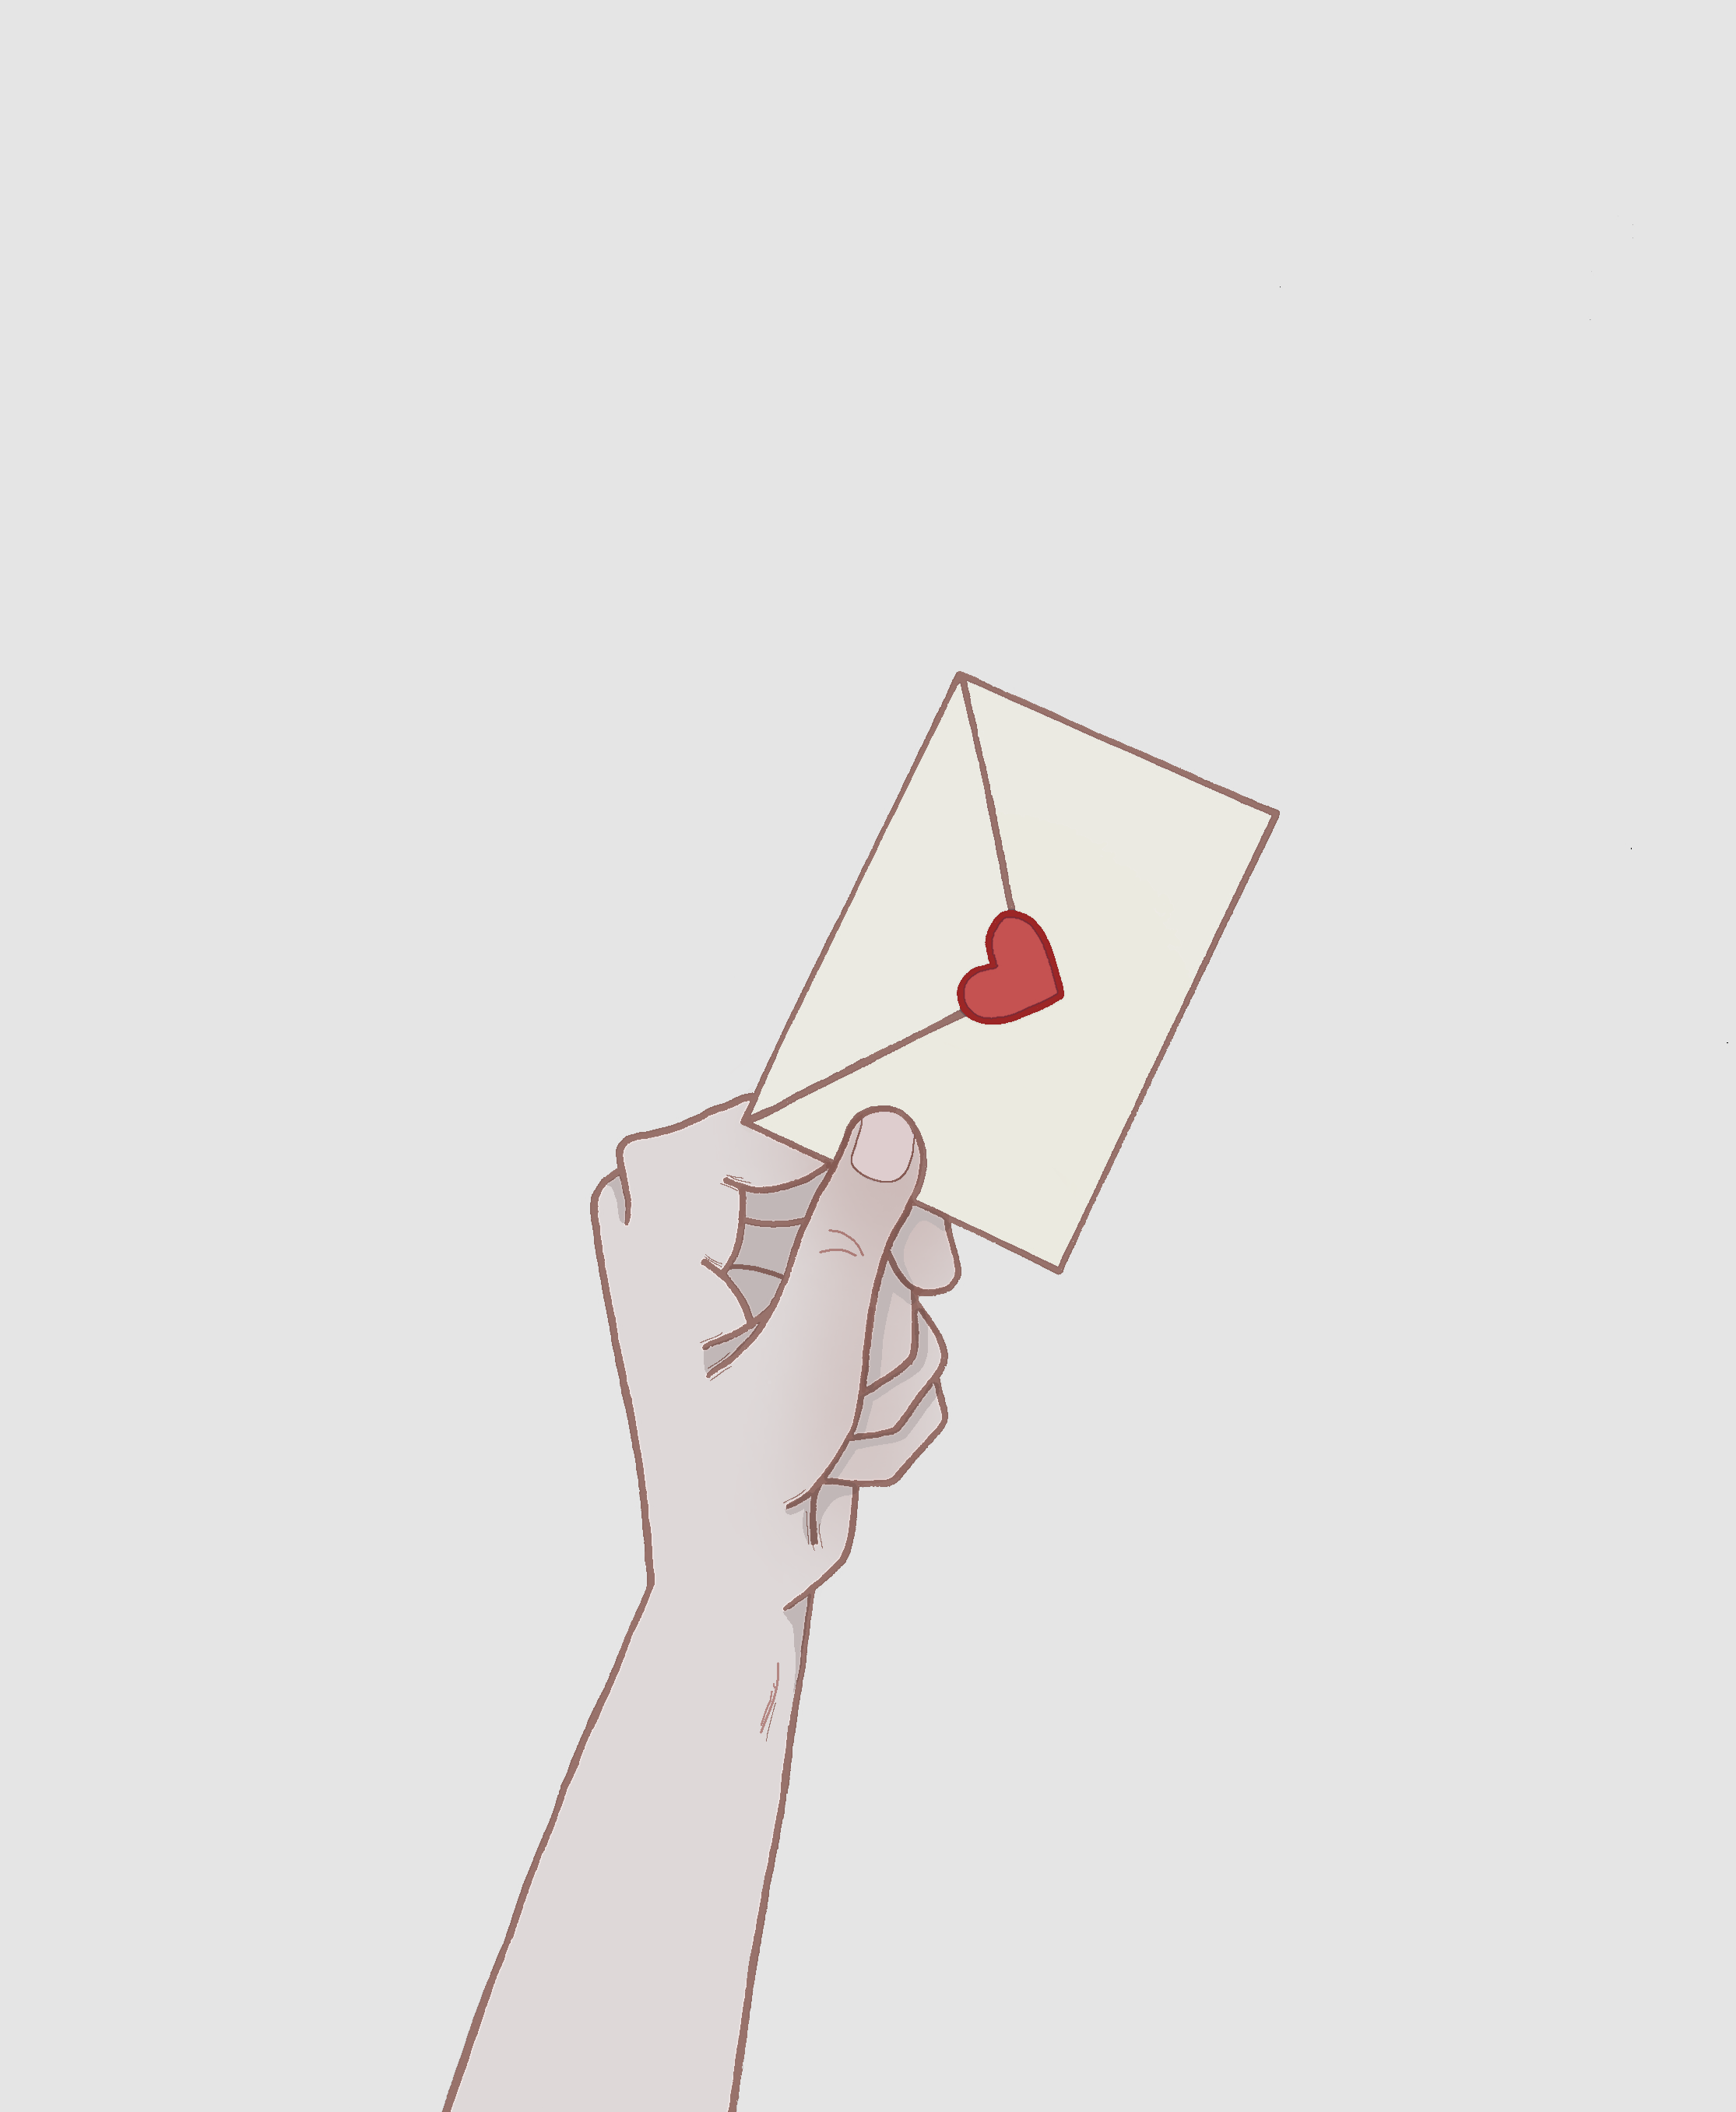 Love Letter